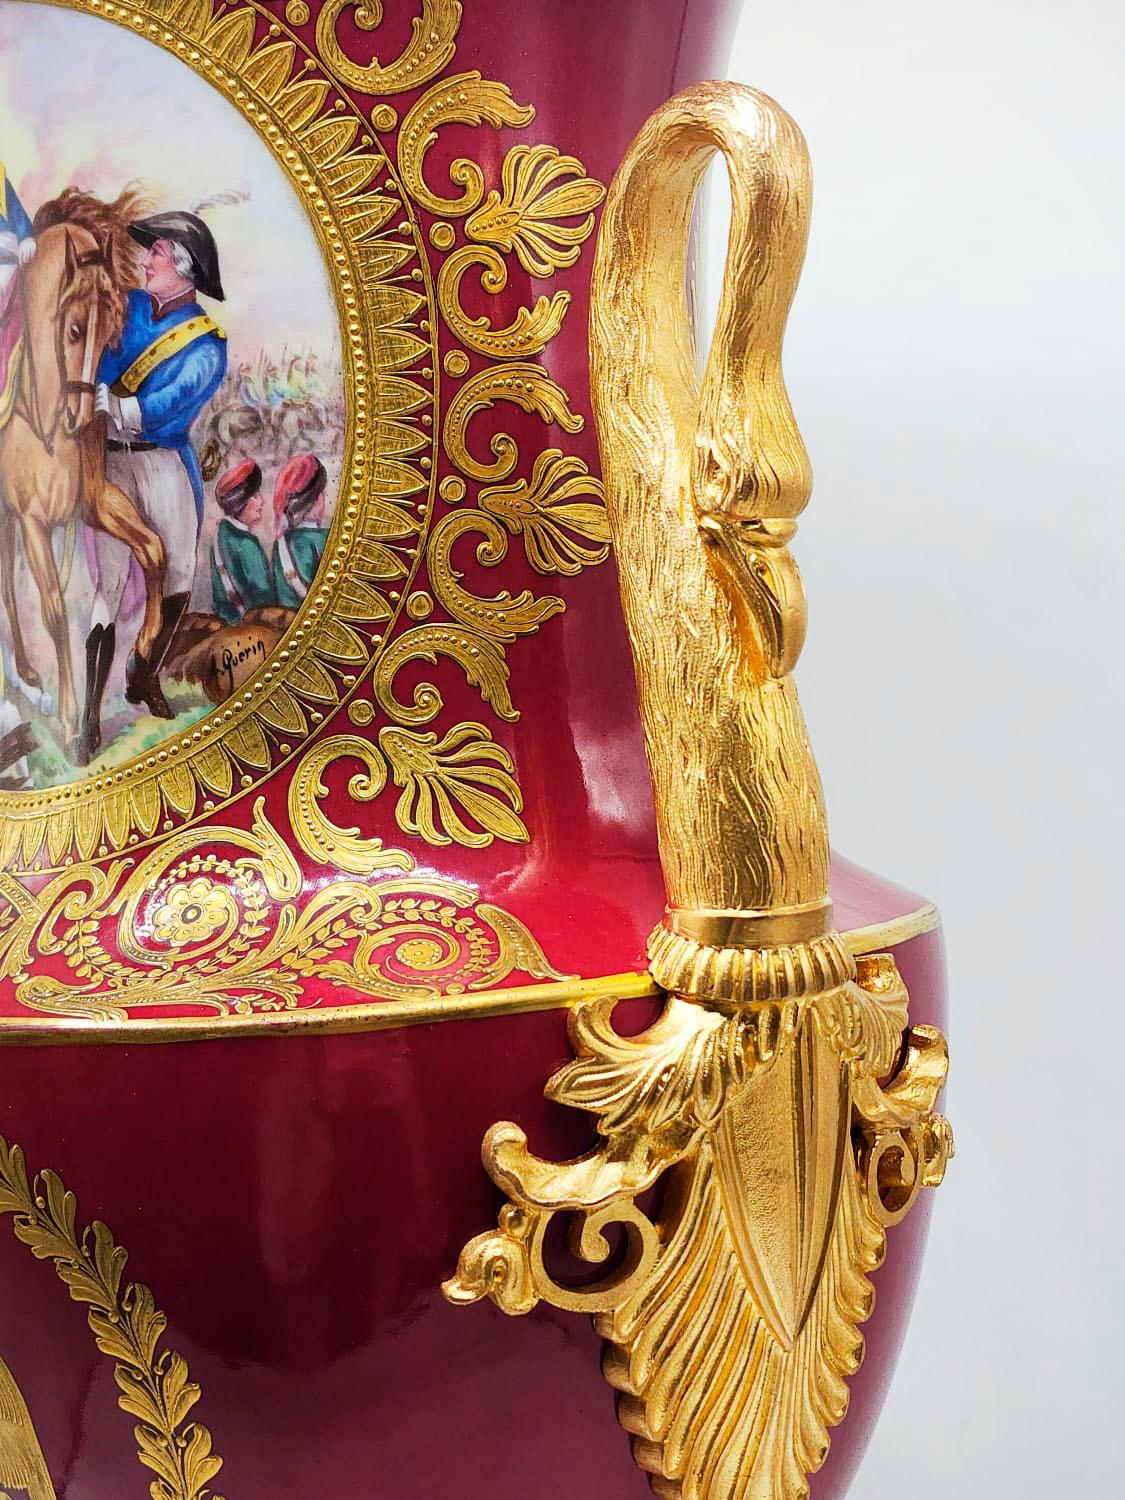 Französische Porzellanvase Napoleonisches Empire 19. Jahrhundert

Extravagante rosa Vase aus französischem Porzellan mit Flamingo-Henkeln, Sockel mit Flamingo-Beinen und Malereien auf beiden Fronten, signiert A.Querin.
Die Vase hat eine